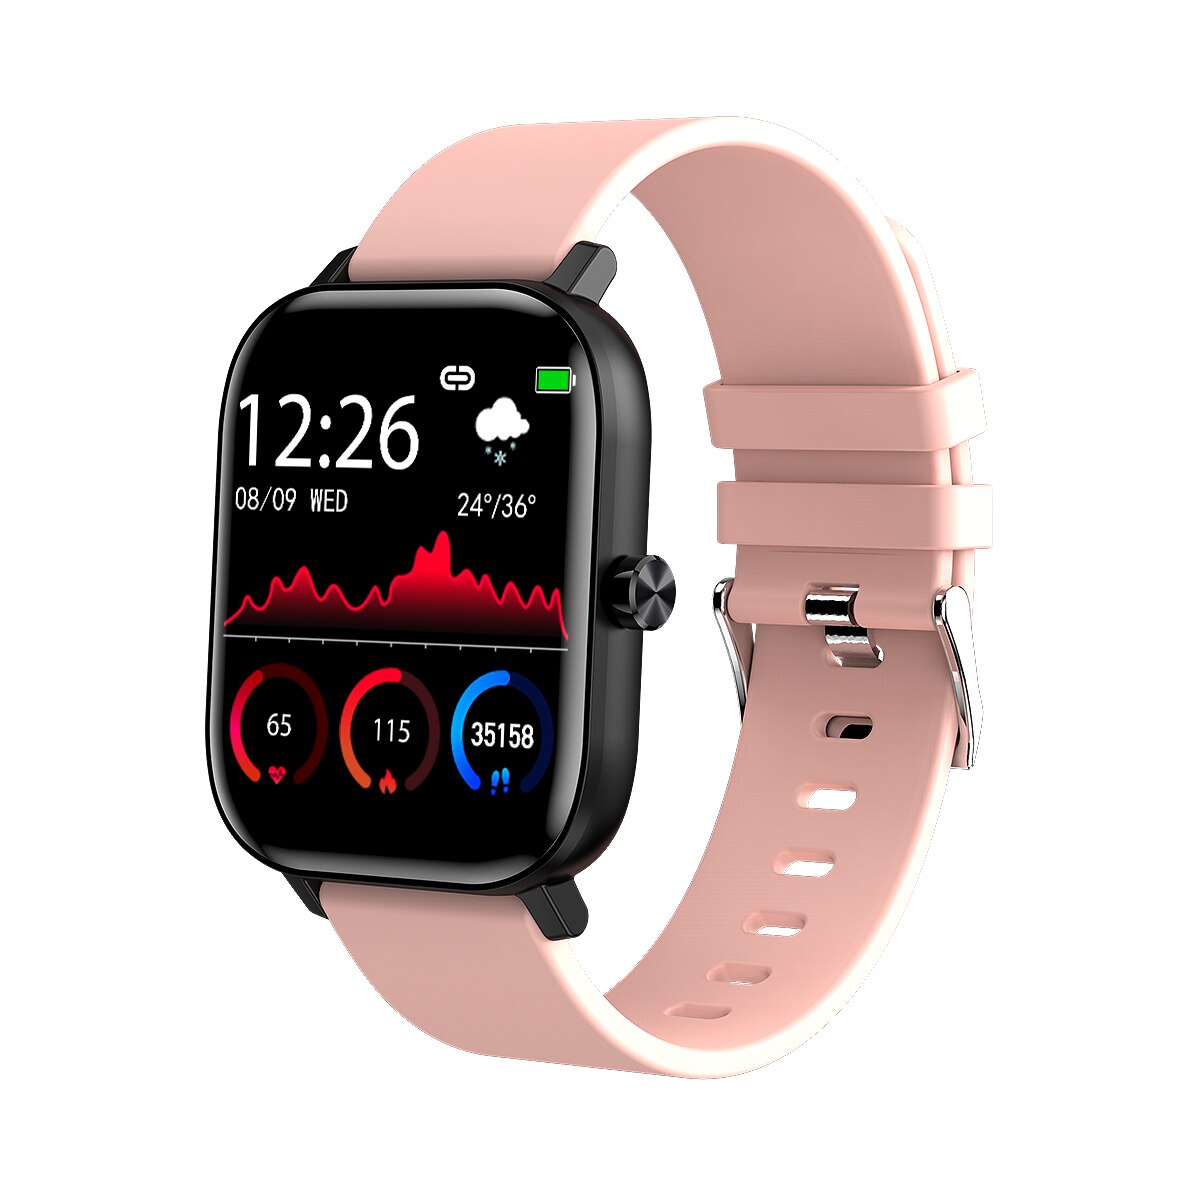 Clever Uhr Männer Frauen I10 1.54 "voll berühren Bildschirm Bluetooth Anruf Smartwatch Herz Bewertung Blutdruck Monitor für Android IOS: Rosa Silikon